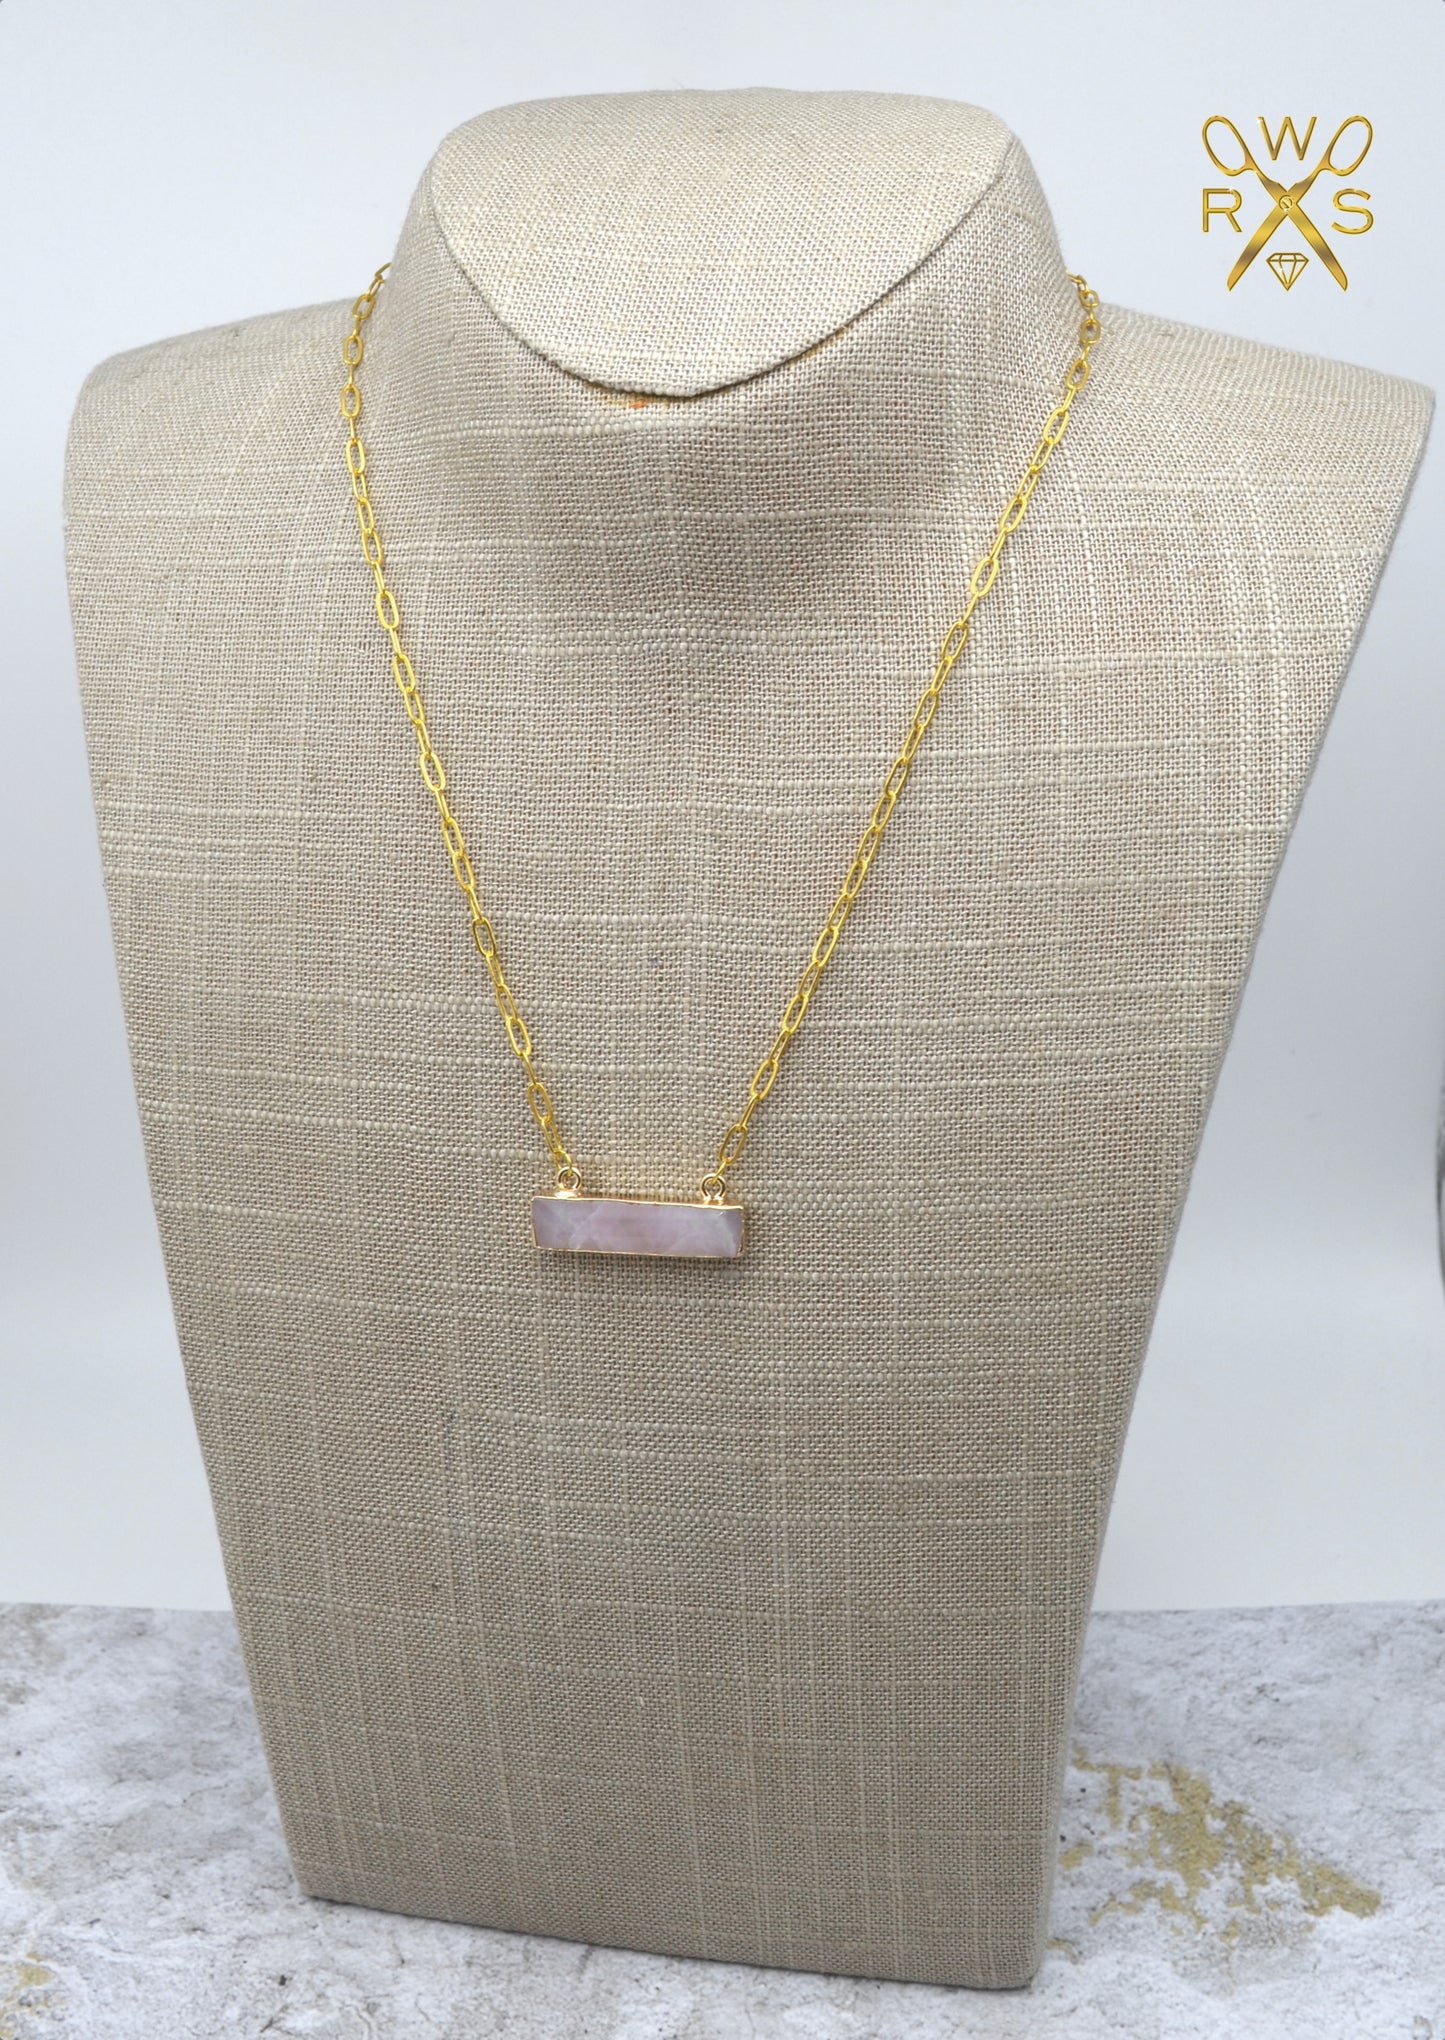 SALE Dainty Rose Quartz Bar Necklace - Paperclip Chain Necklace